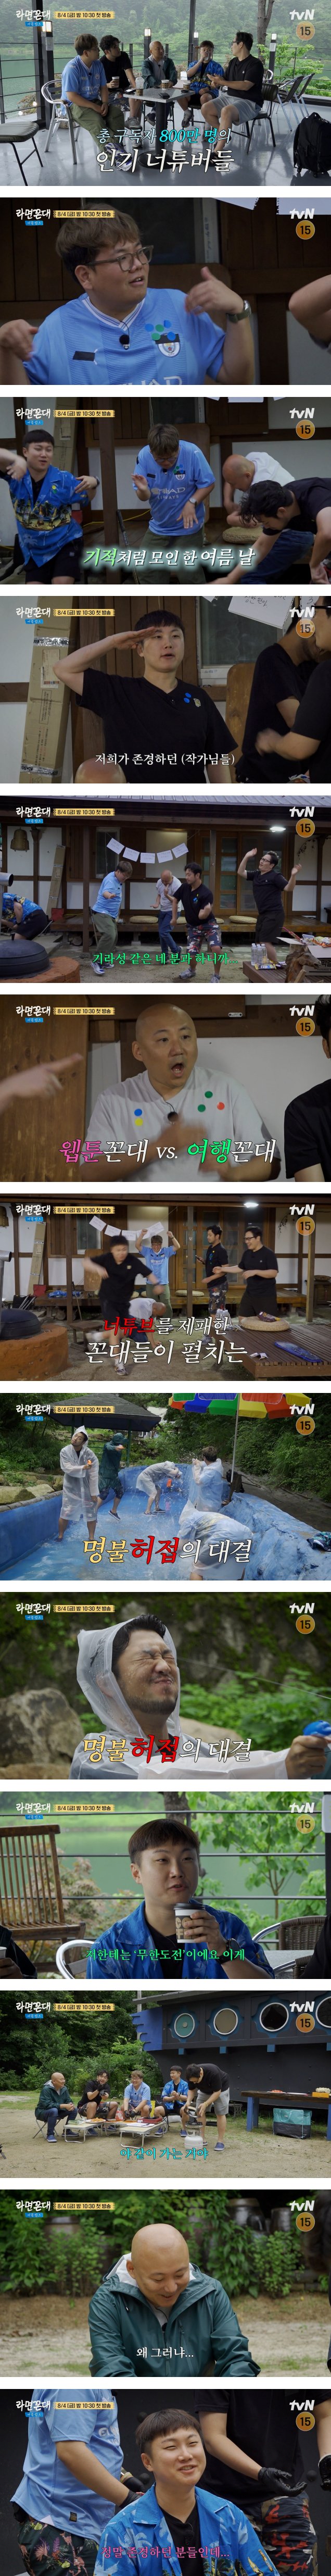 드디어 tvN까지 진출한 침펄풍빠곽의 여름캠프.jpg